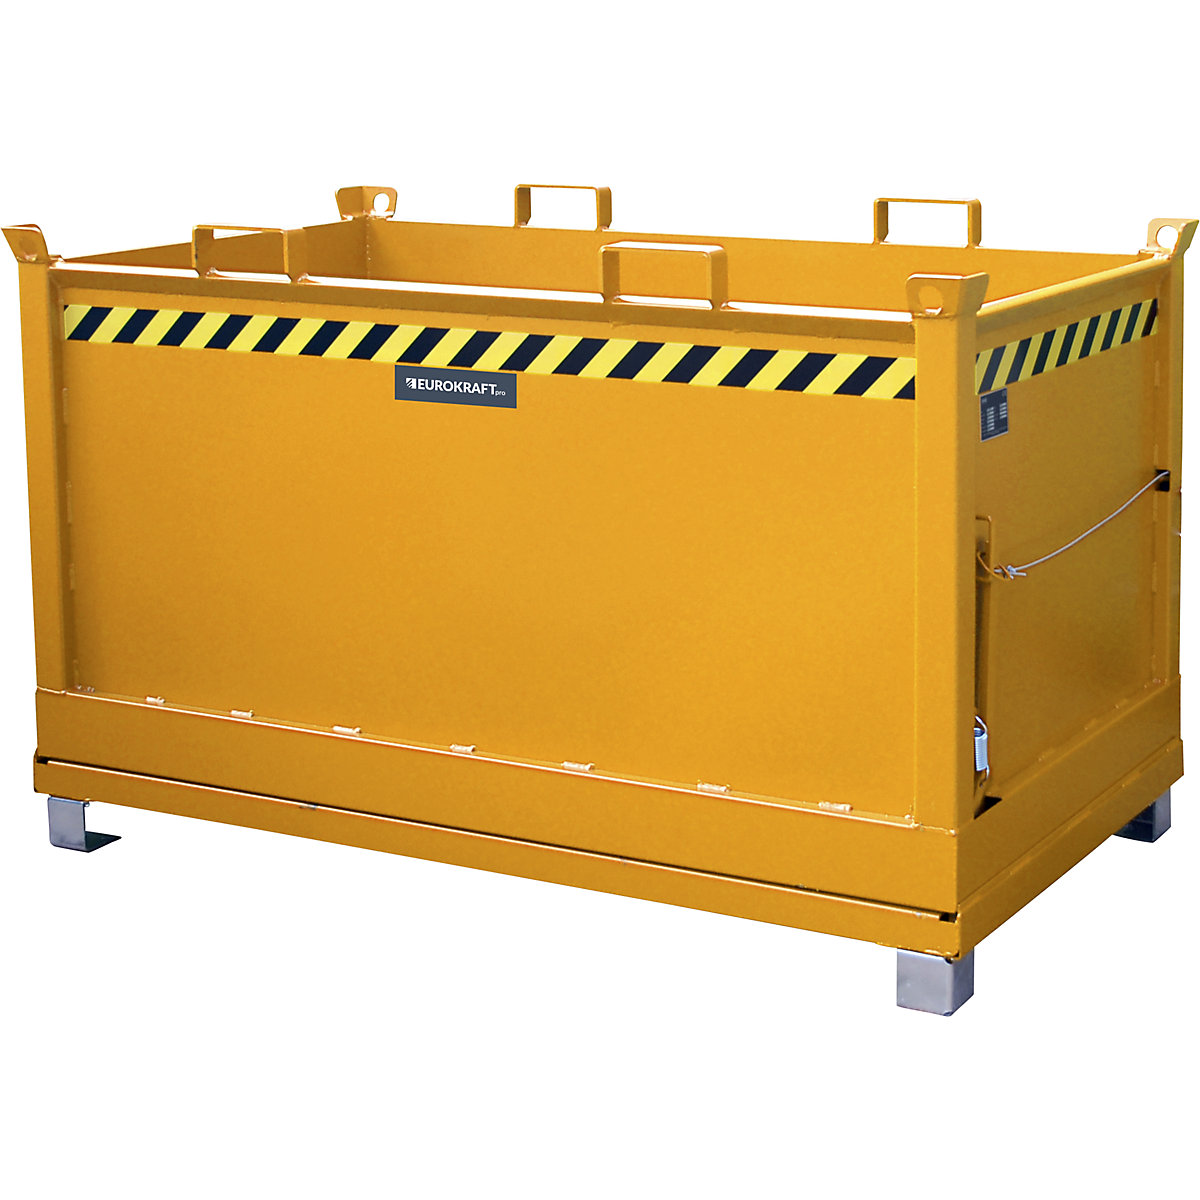 Container cu podea pliabilă – eurokraft pro, volum 1,5 m³, galben-portocaliu RAL 2000-11